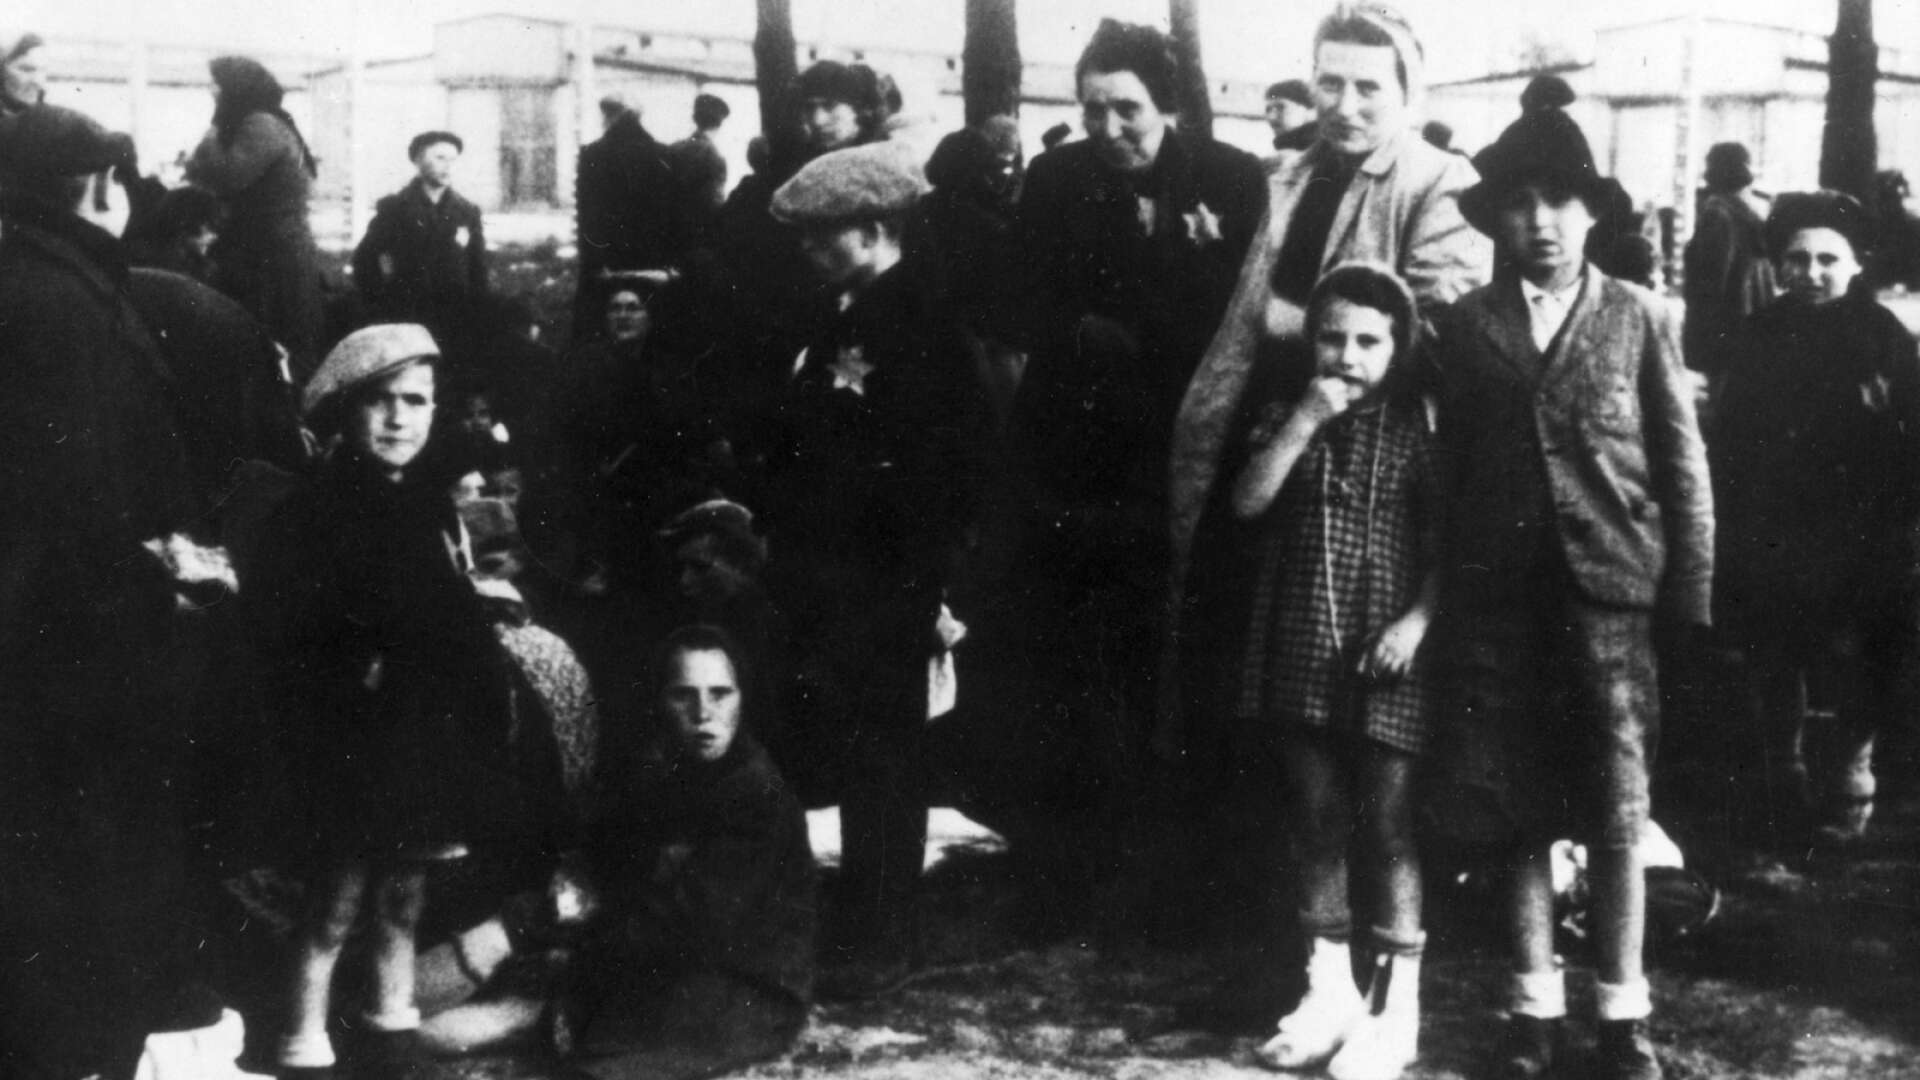 ARKIV -1944 AUSCHWITZ Ungerska judar i Auschwitz i väntan på gaskammaren. 